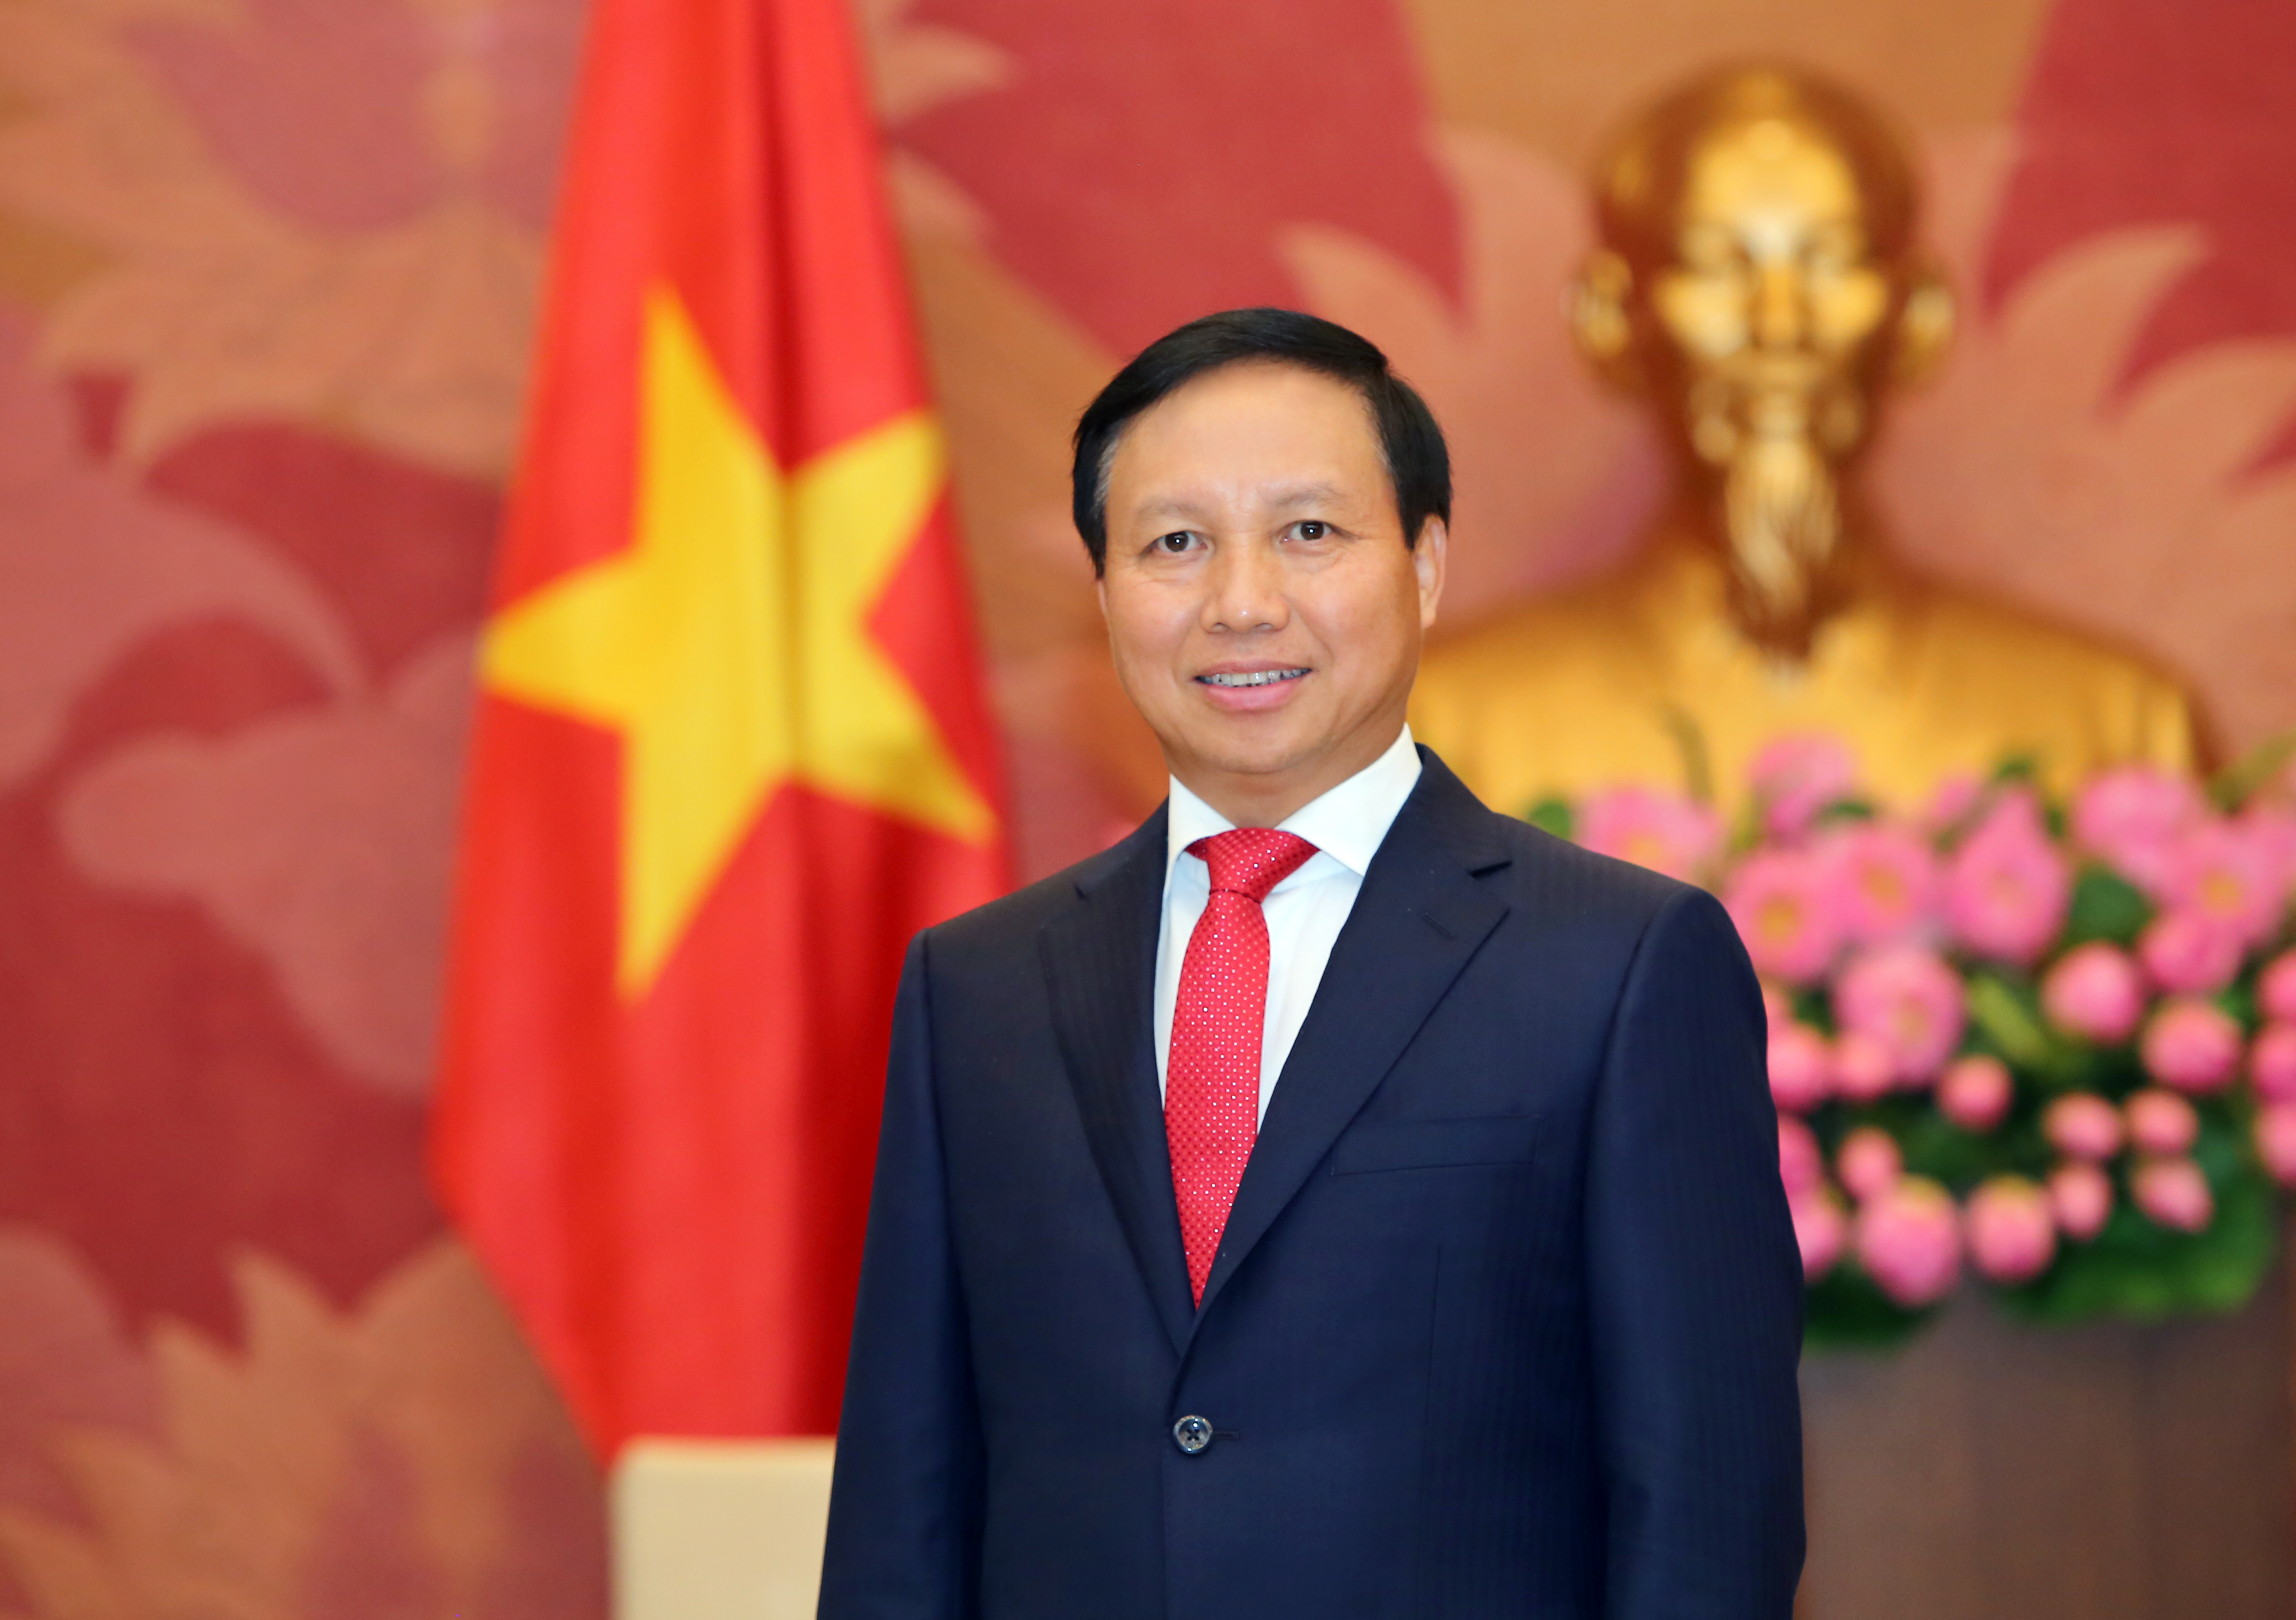 Степную столицу с юбилеем поздравил Полномочный Посол Социалистической Республики Вьетнам в России господин Нго Дык Мань